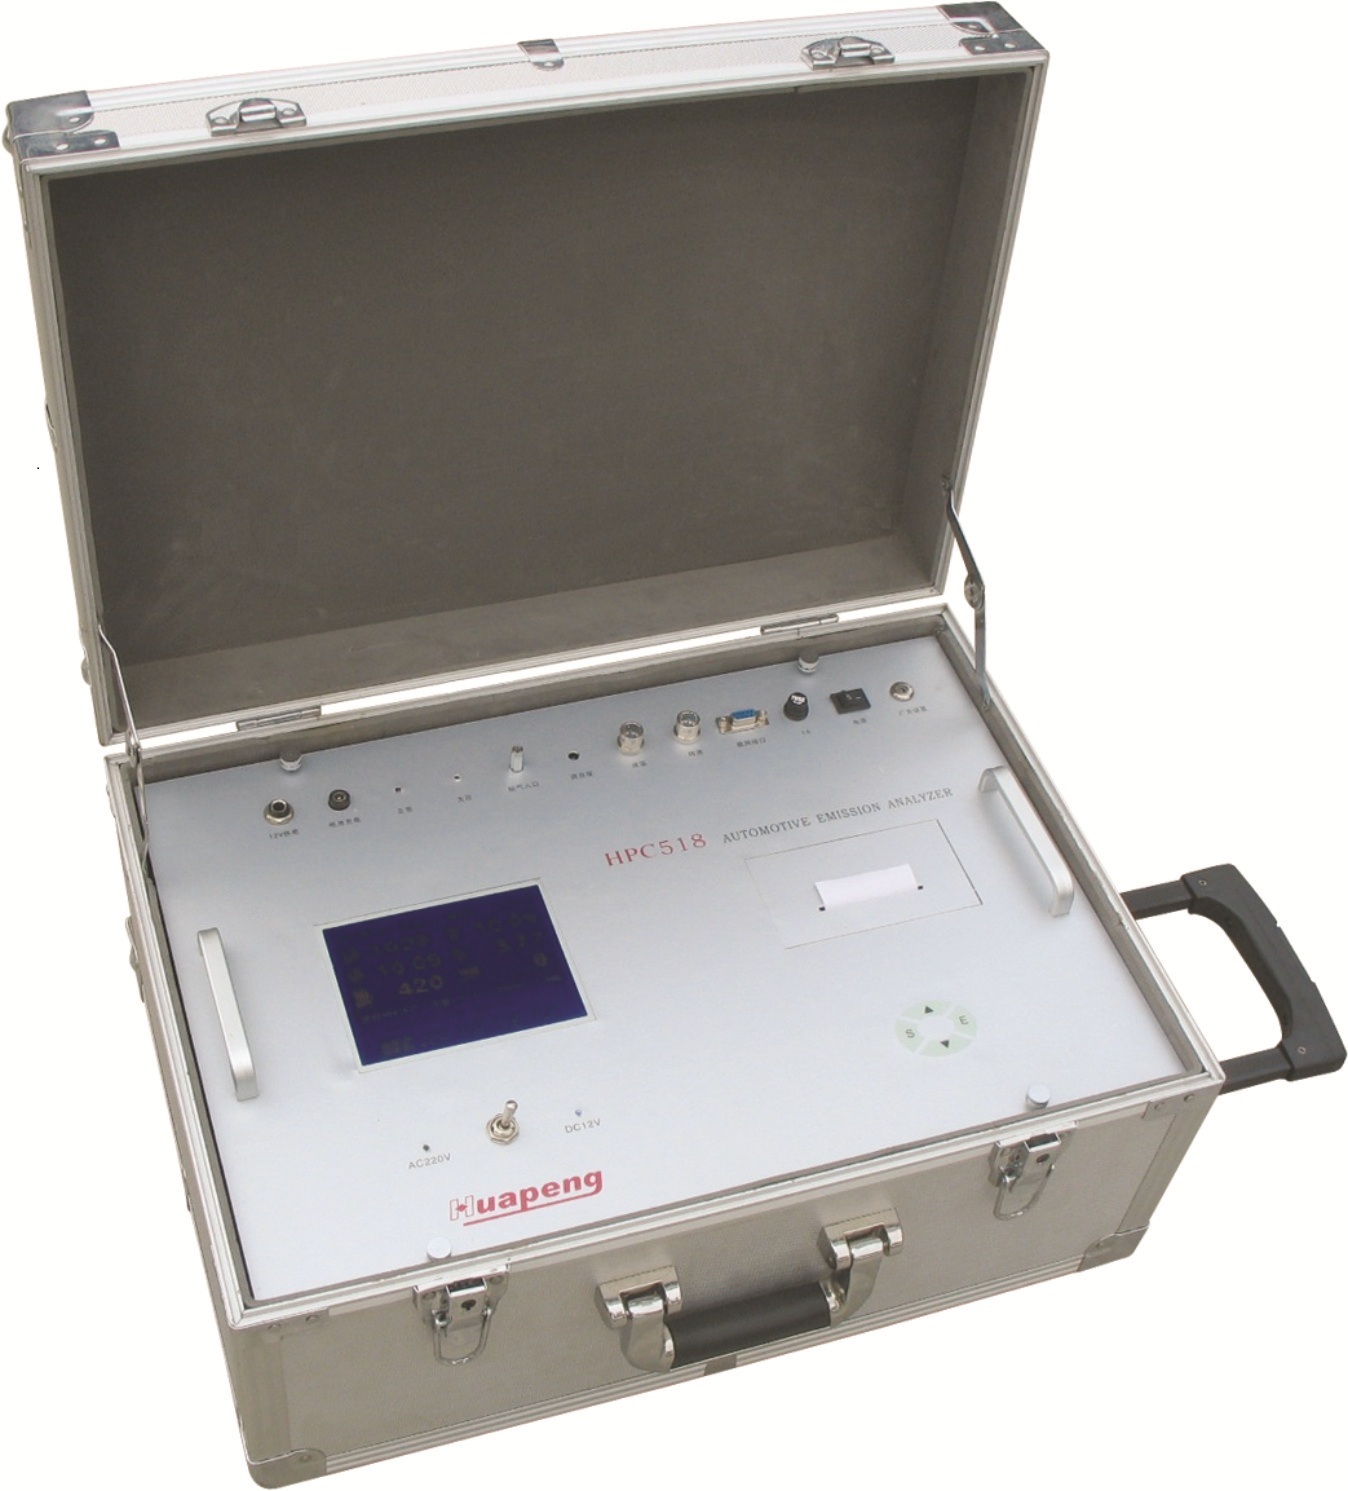 加拿大BW平台商供应 GAXT-H防水型硫化氢检测仪